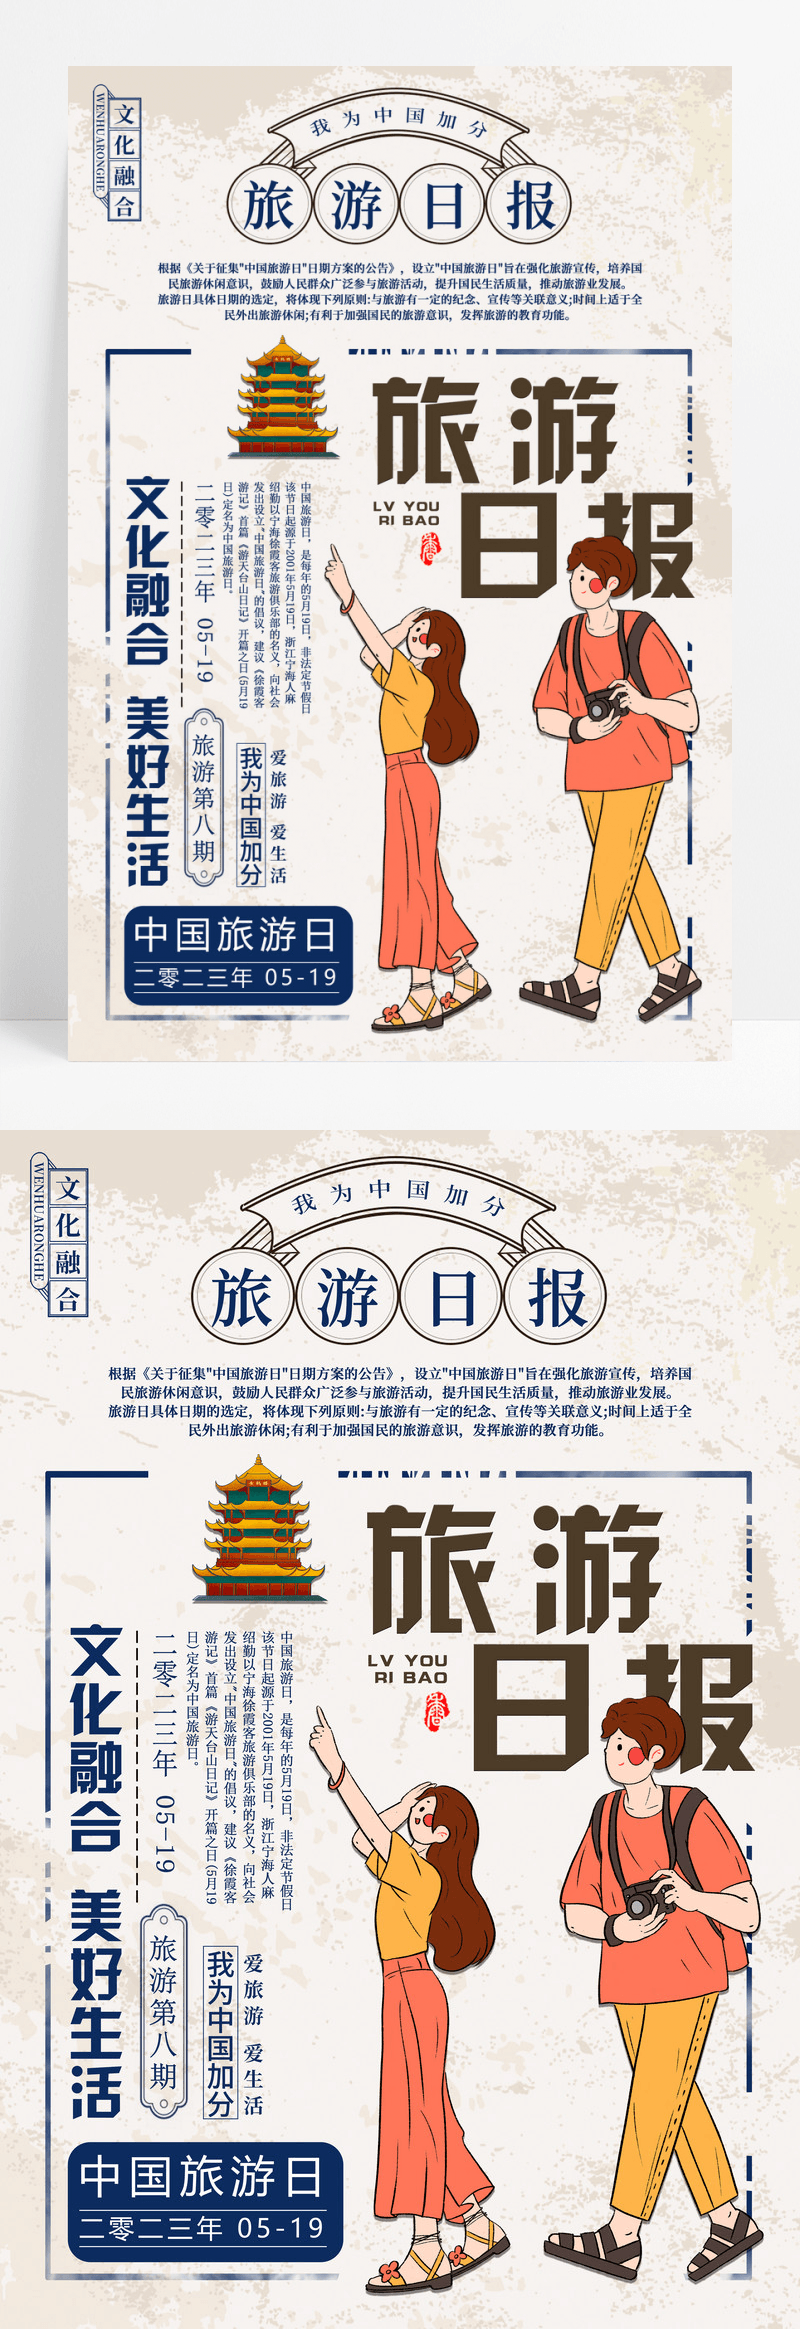 蓝色复古风5月19日中国旅游日宣传海报.